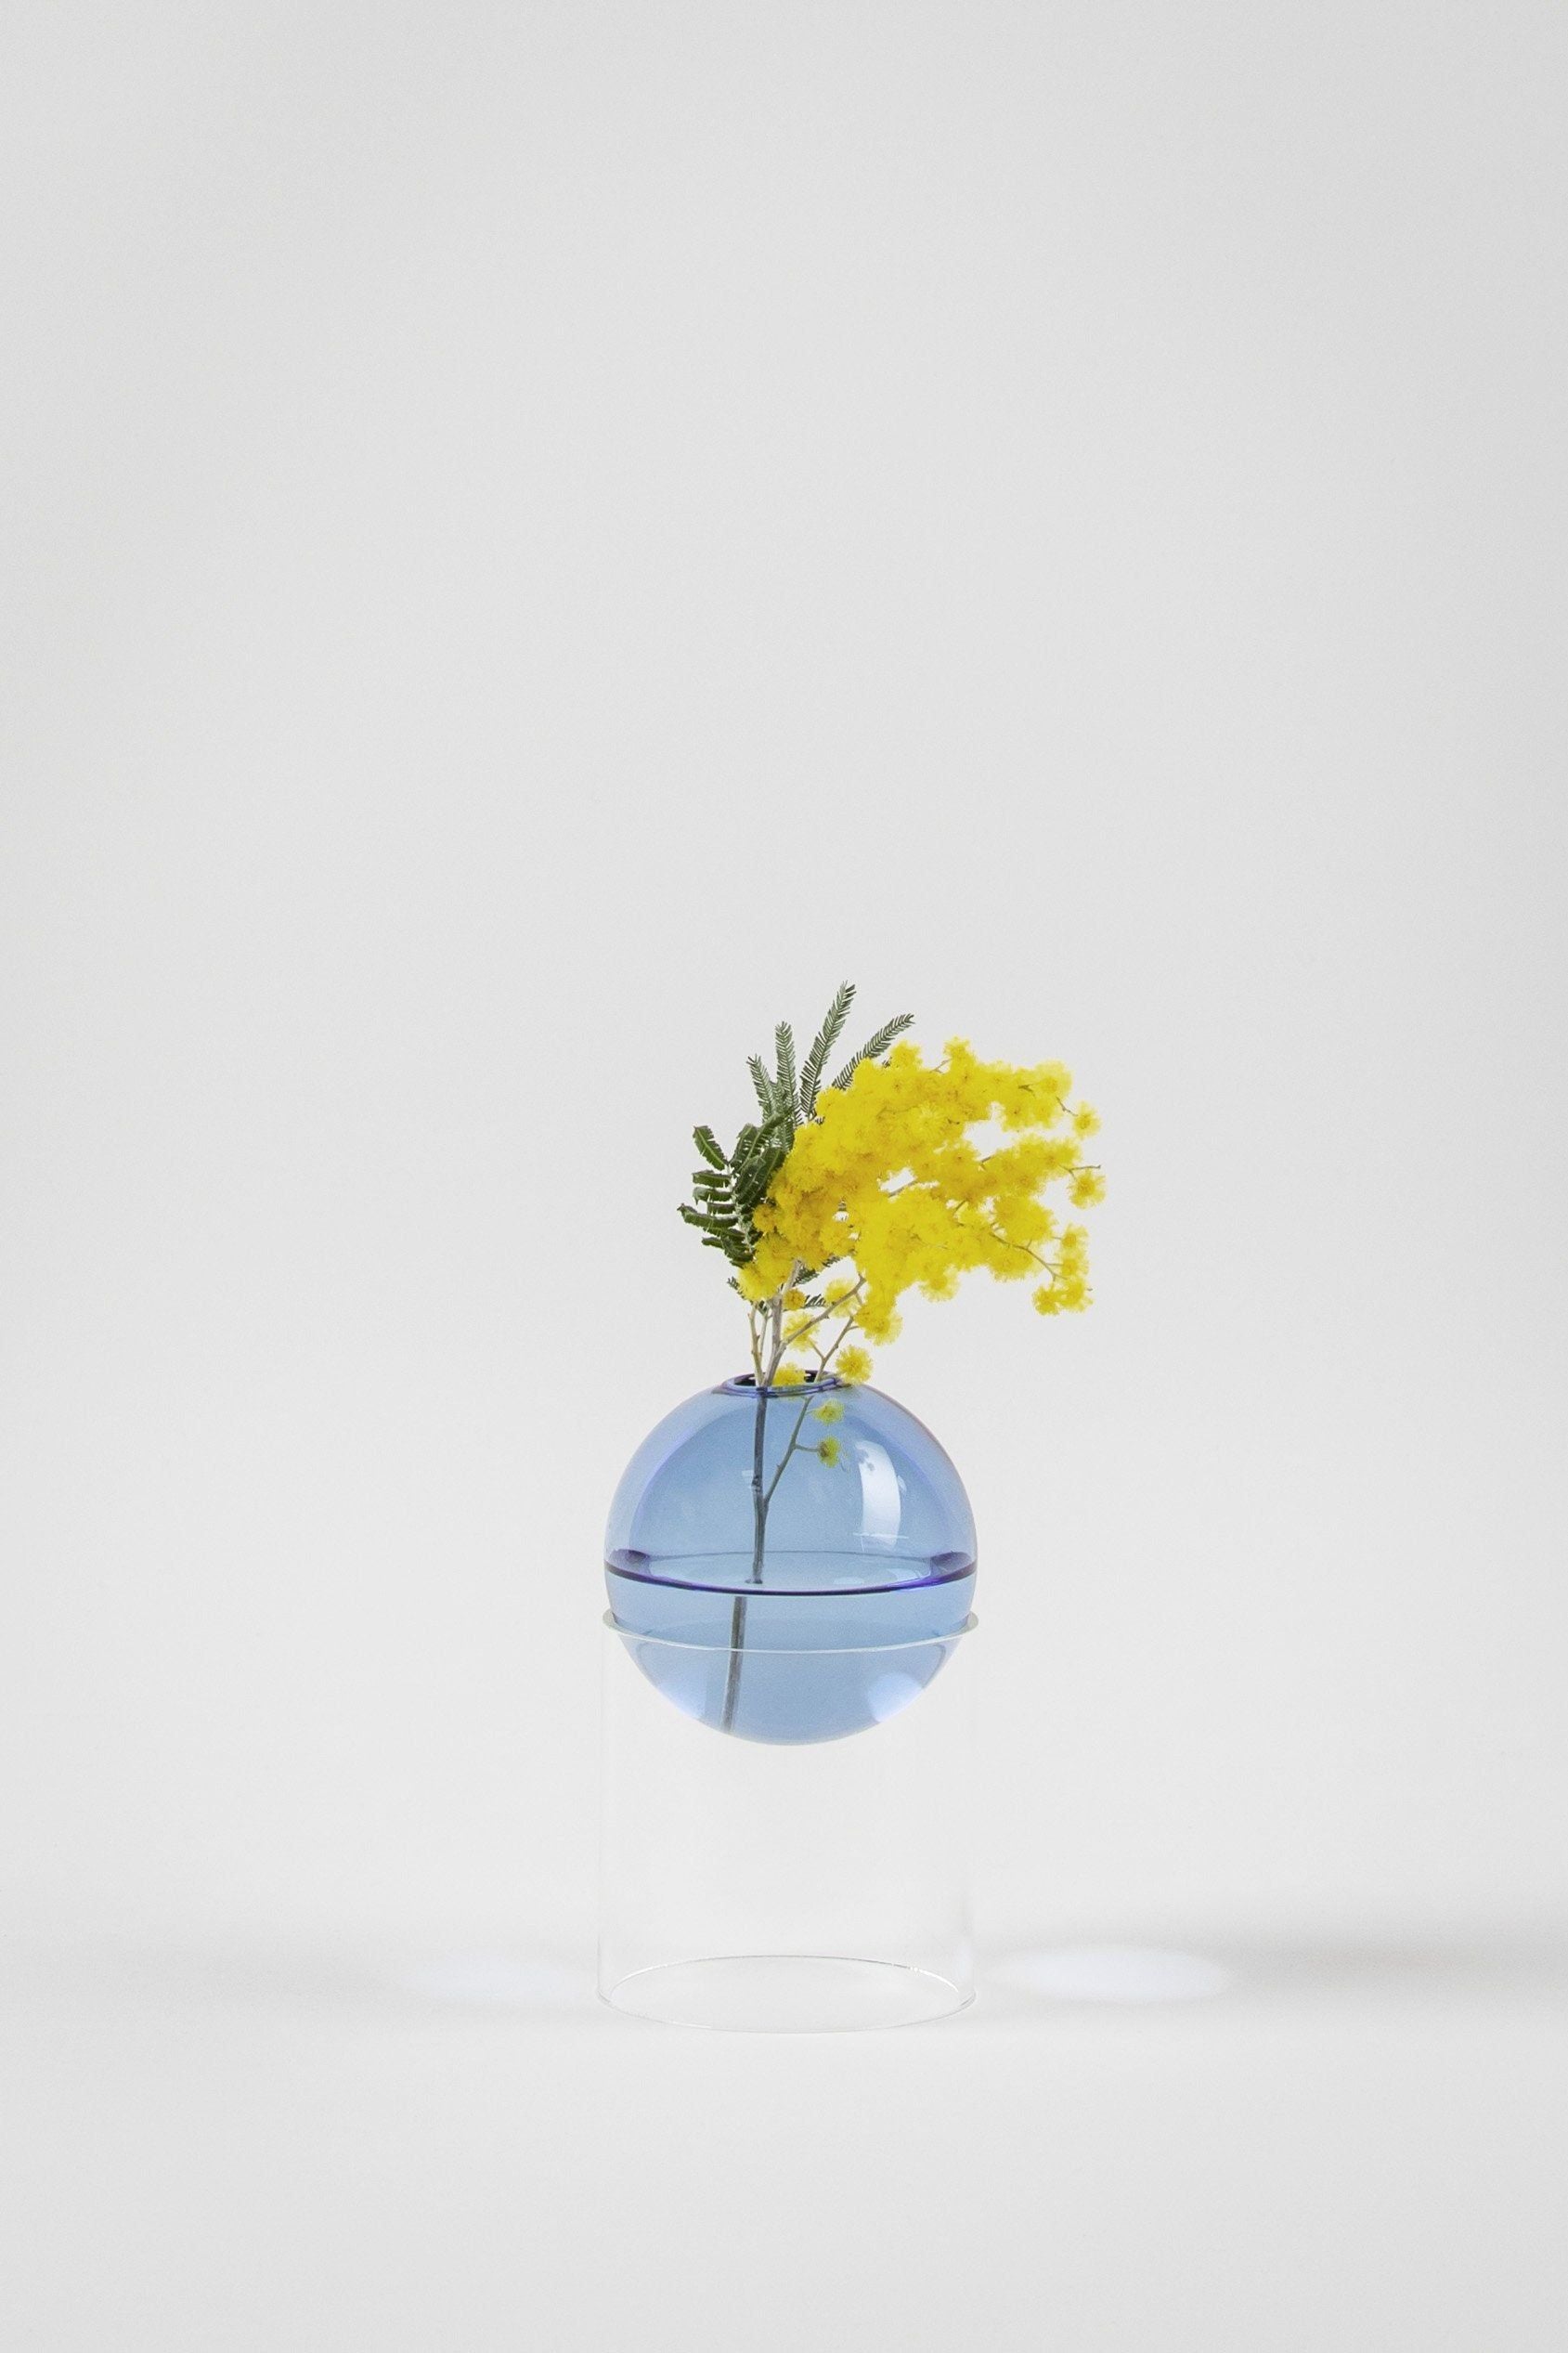 Studio over staande bloemenbubbelvaas 13 cm, blauw